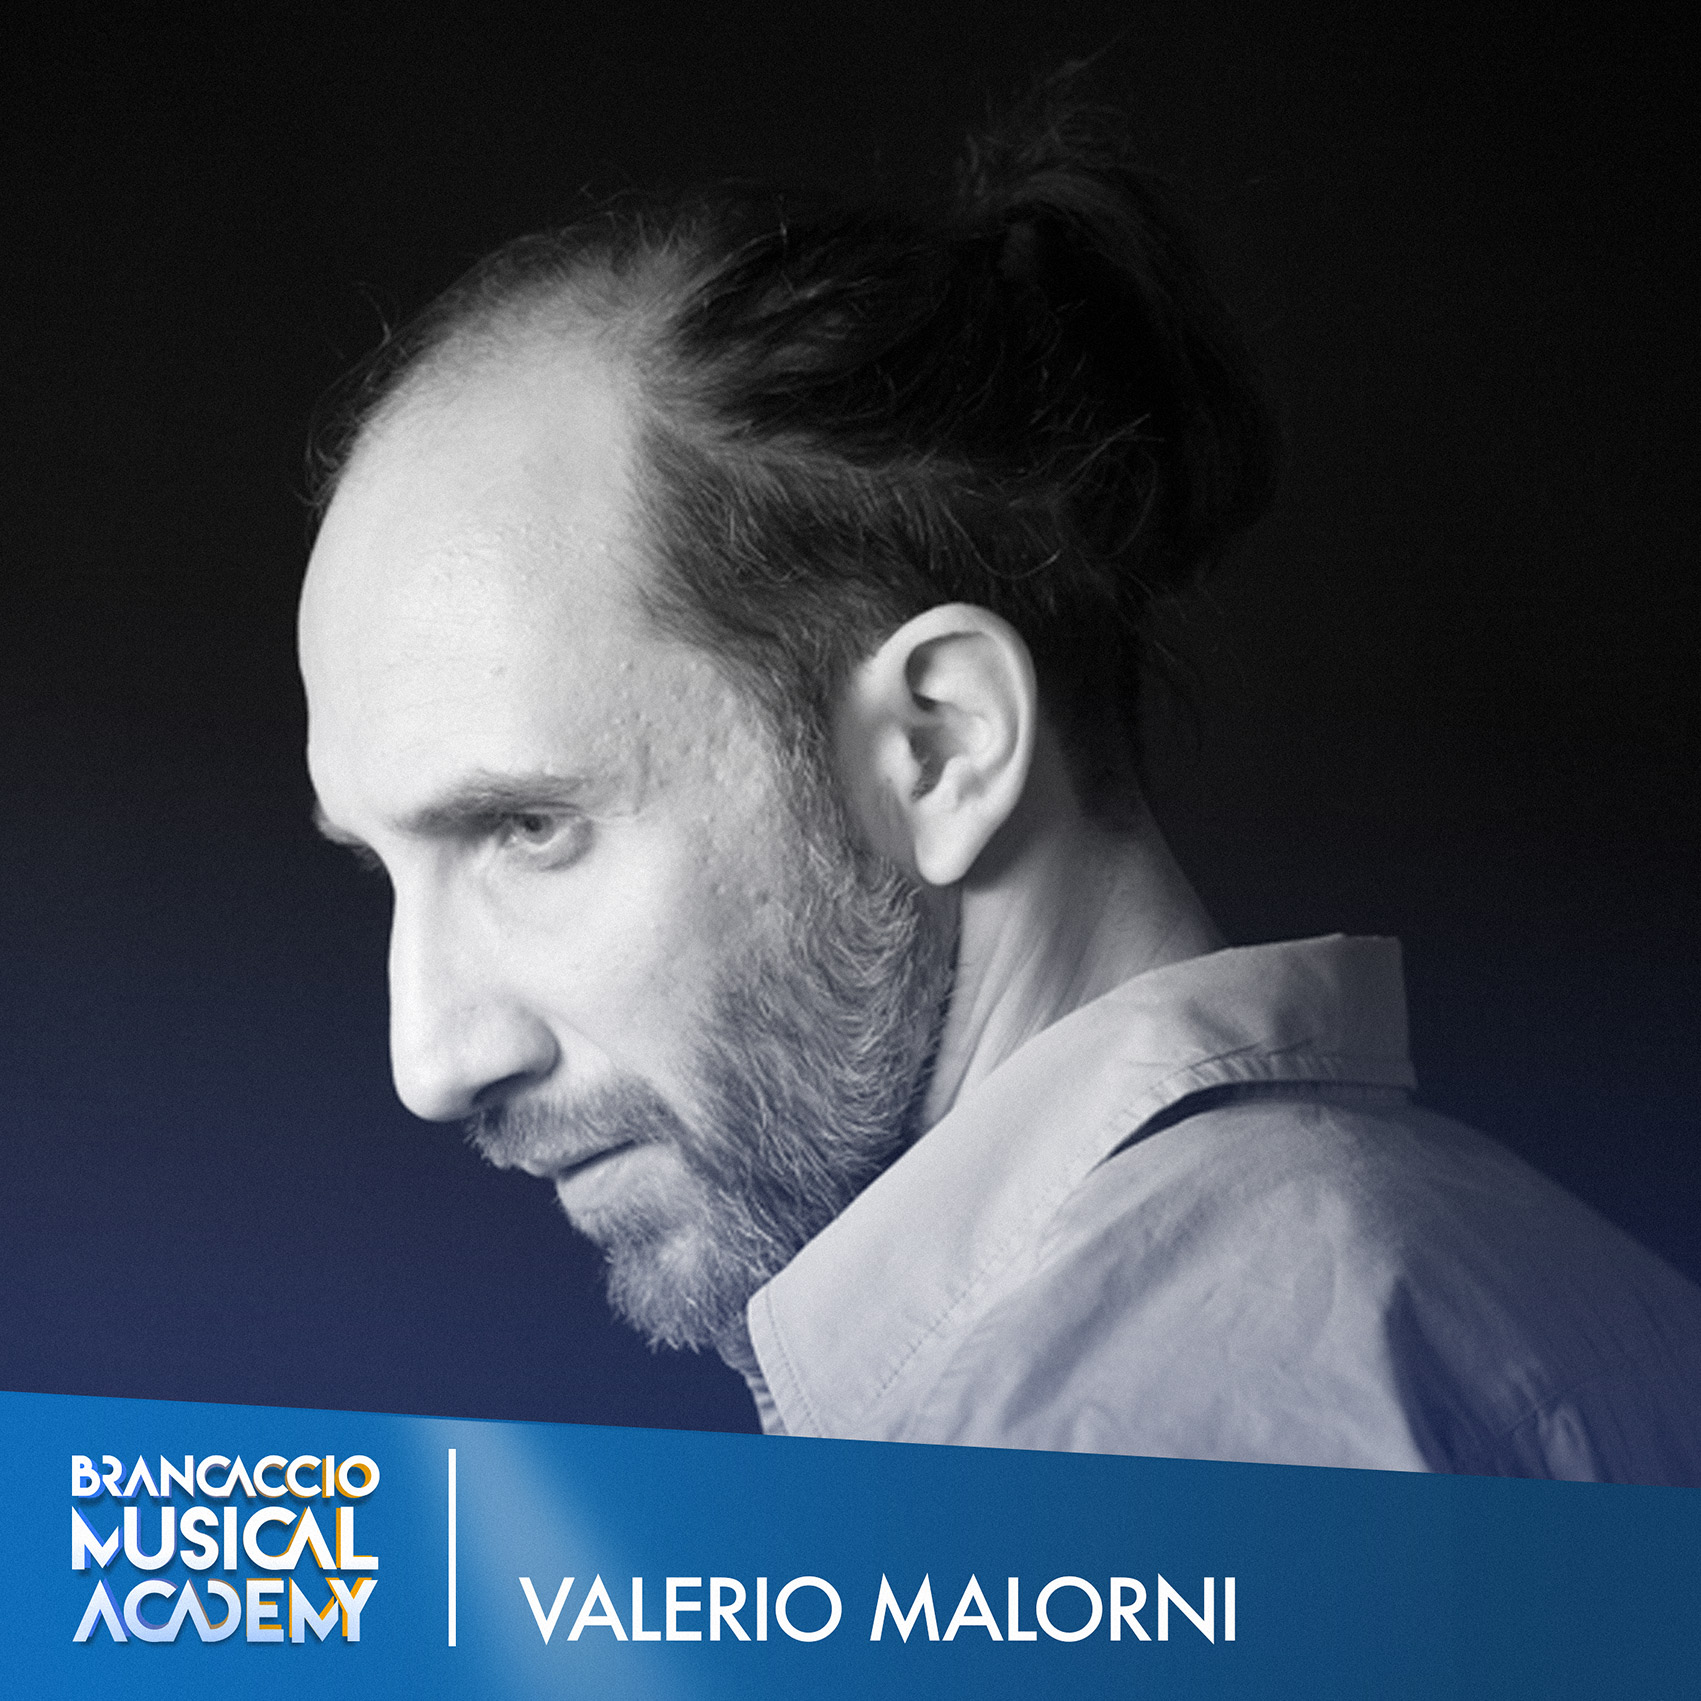 VALERIO MALORNI